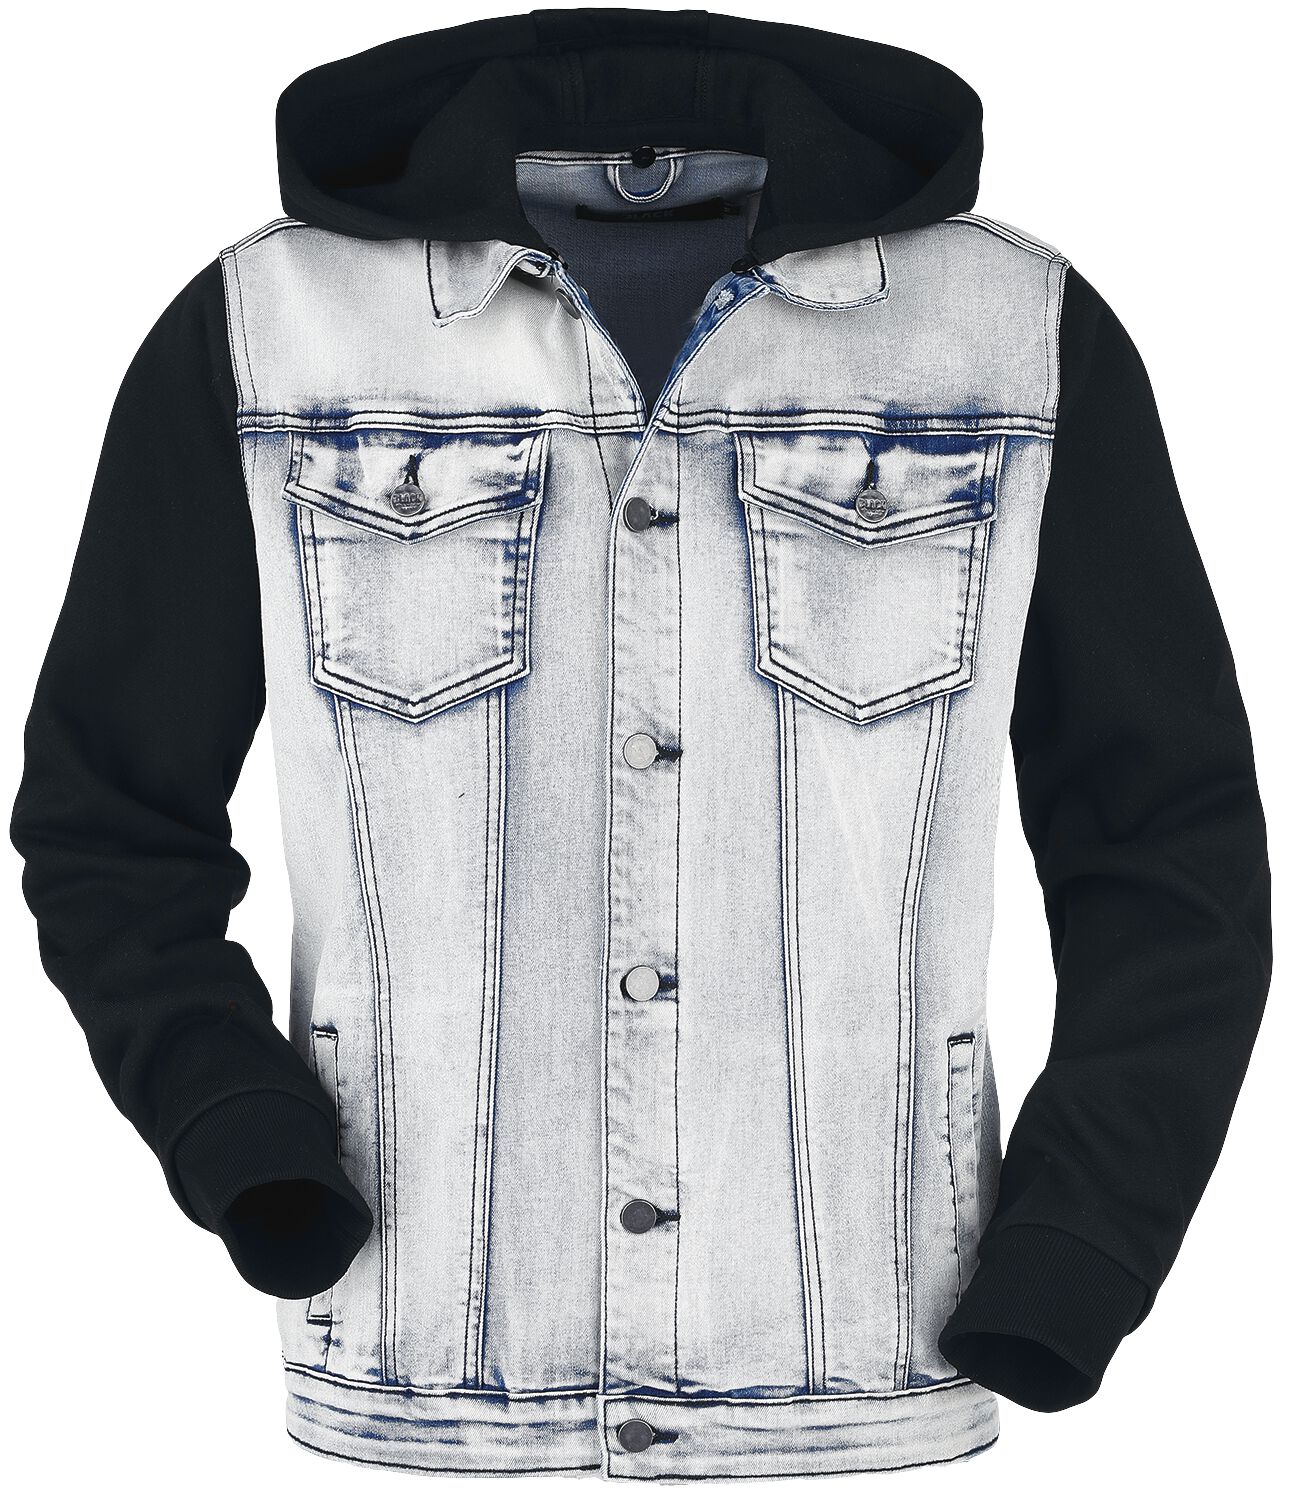 Black Premium by EMP Übergangsjacke - Jeansjacke mit Kapuze - S bis 5XL - für Männer - Größe 3XL - blau/schwarz